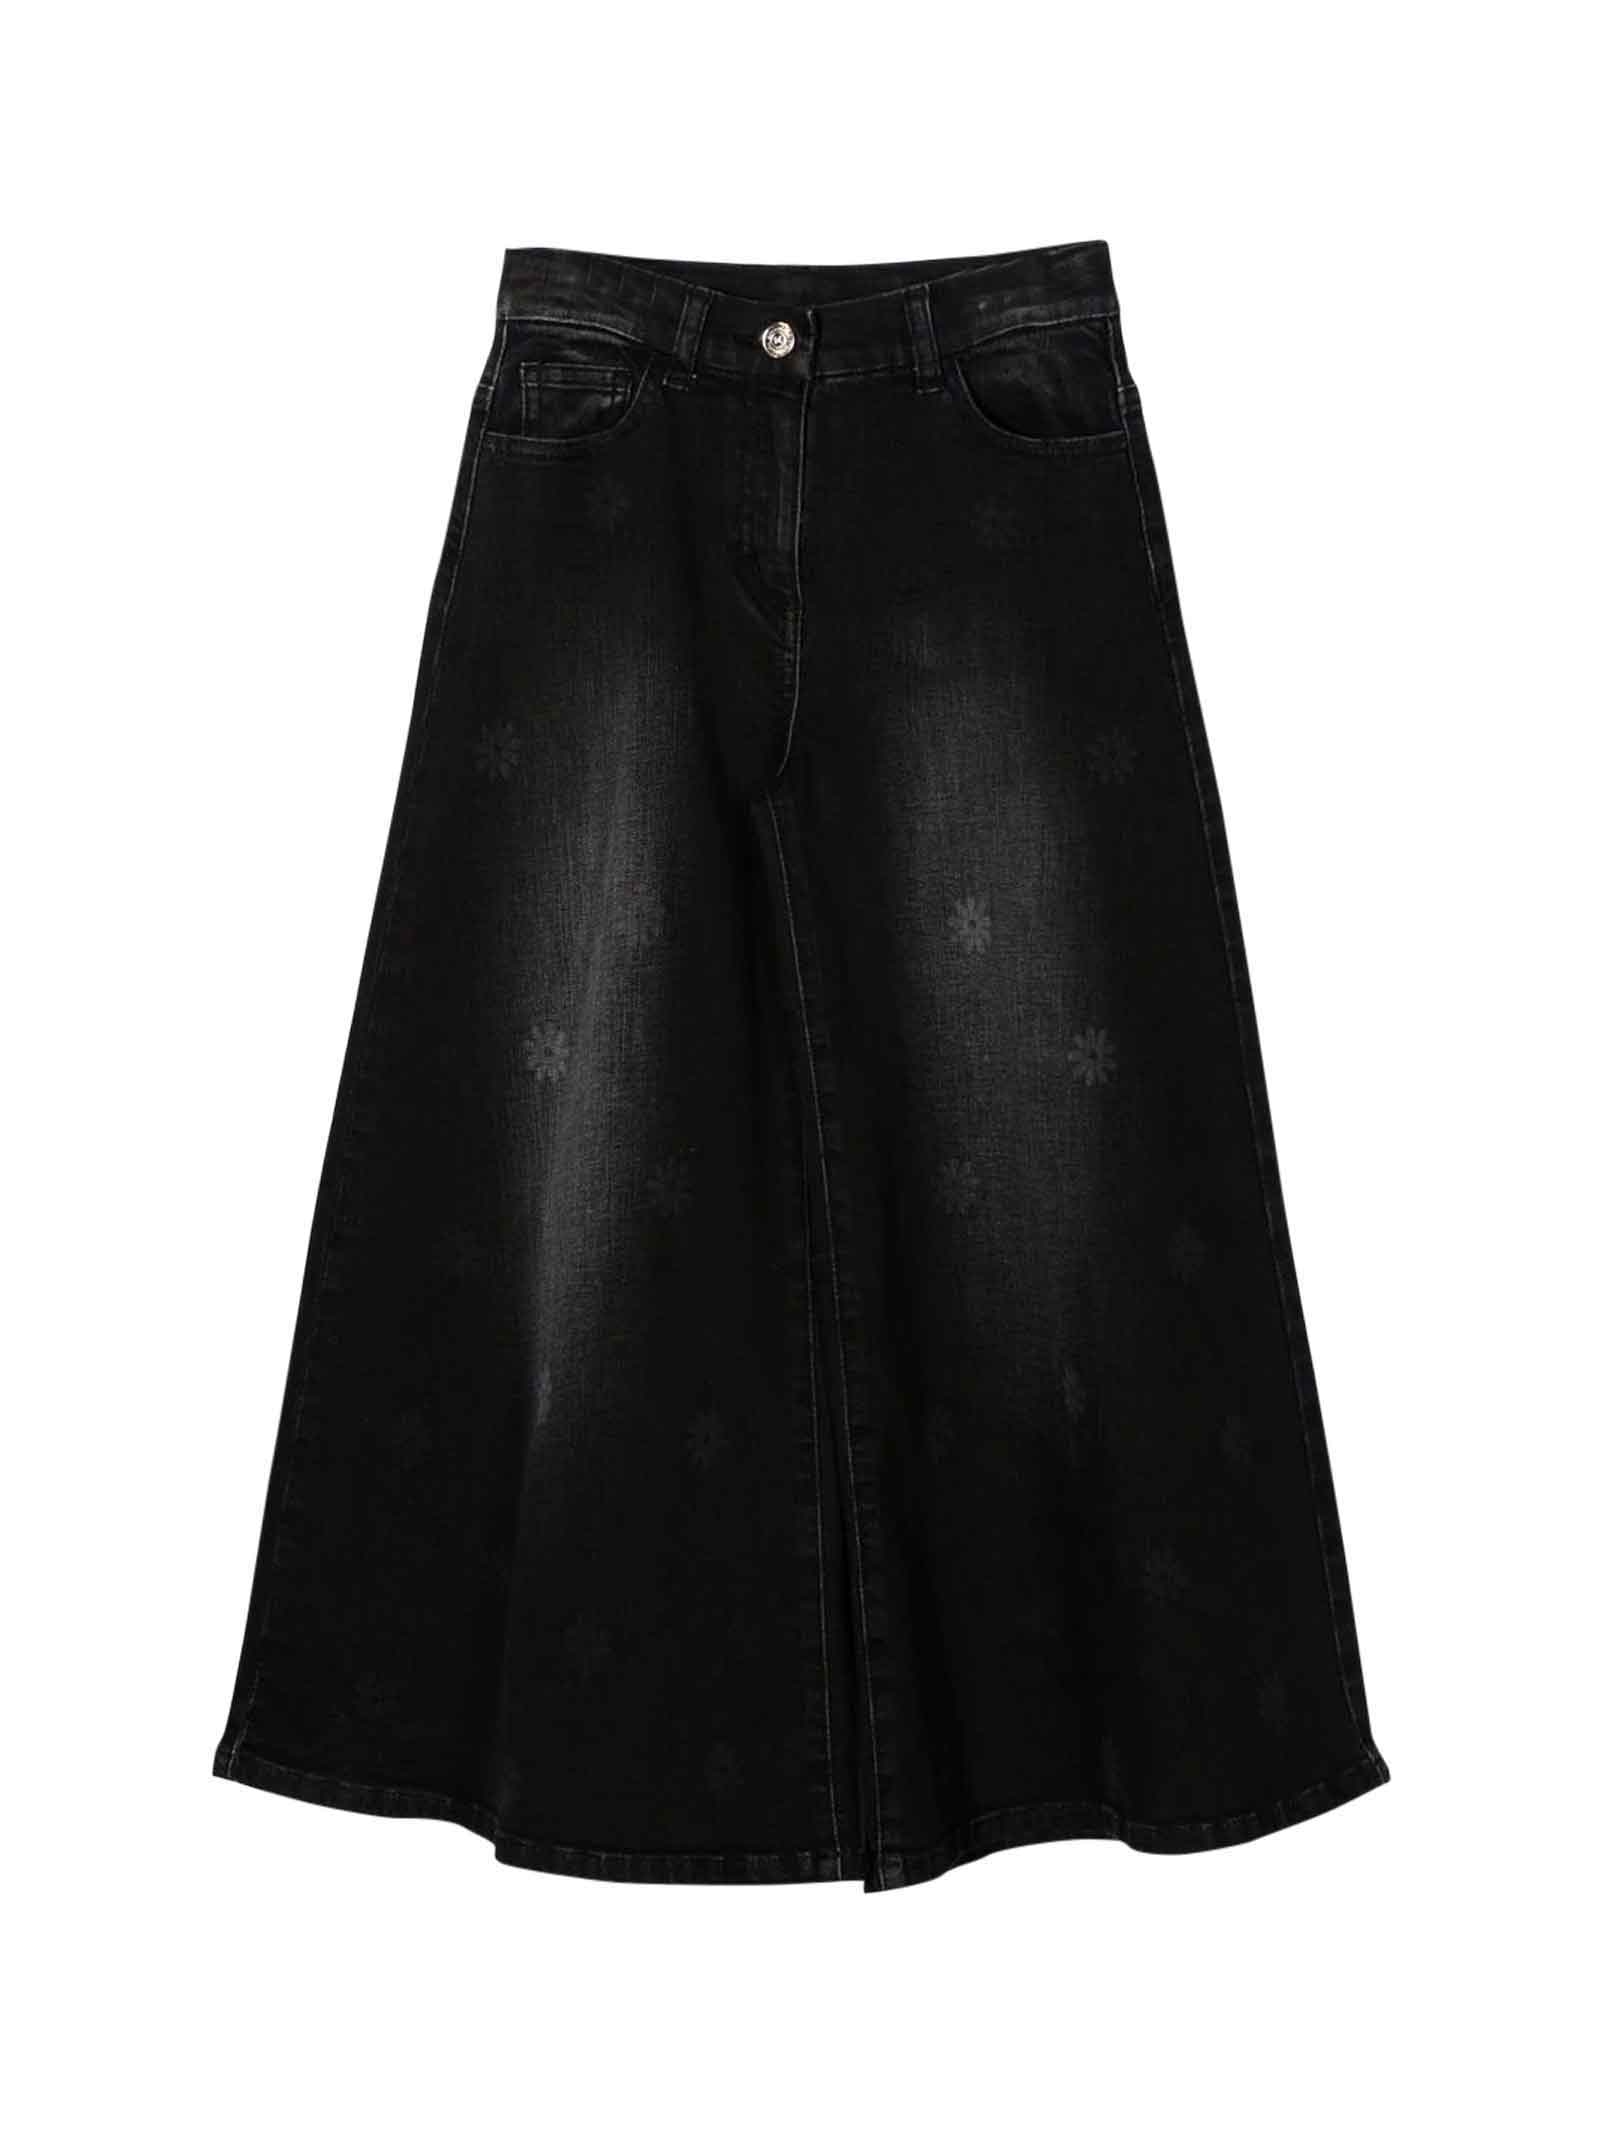 Monnalisa Black Denim Skirt